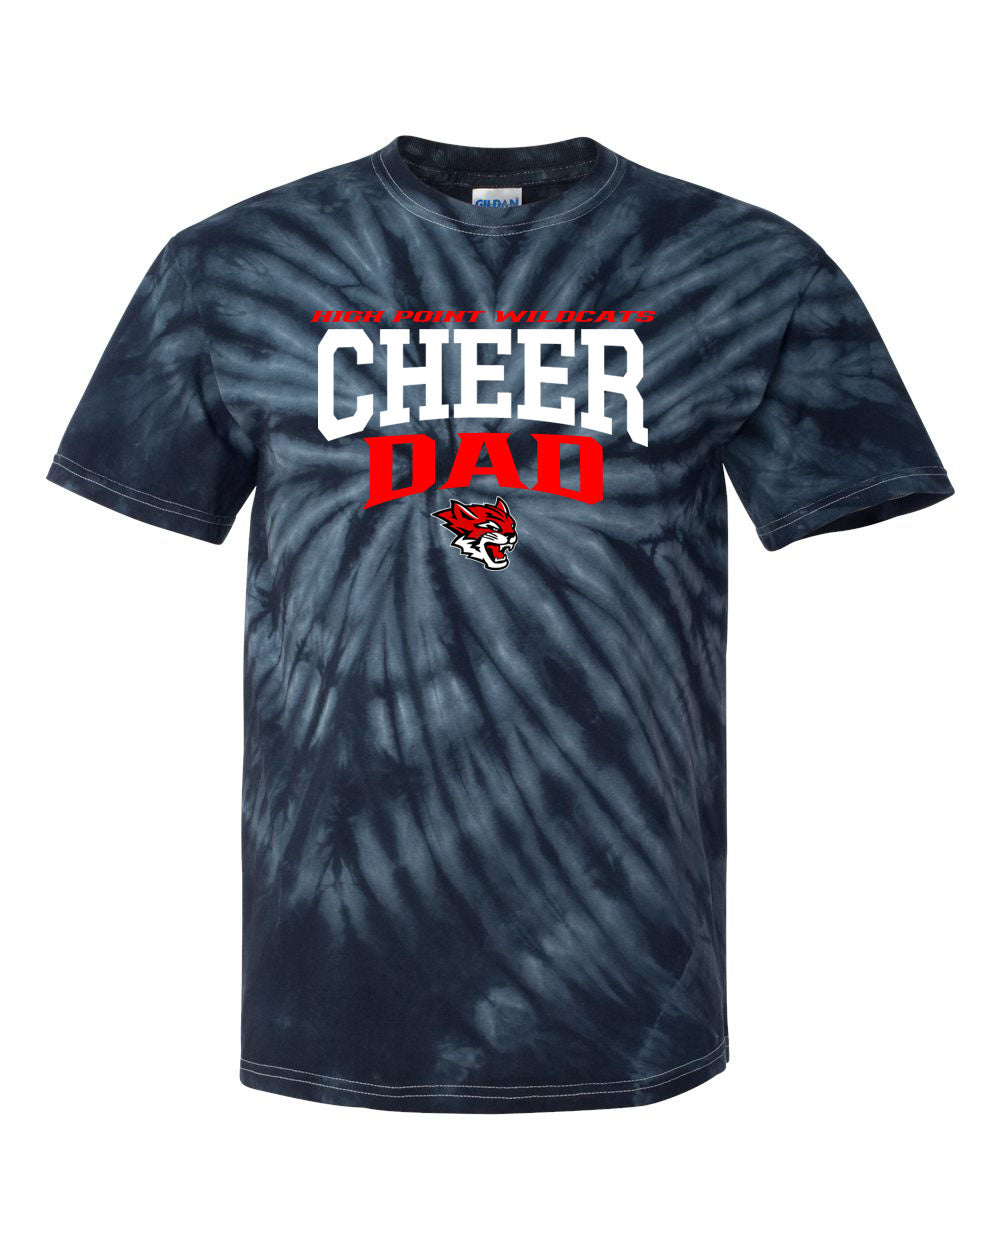 Wildcats Cheer Tie Dye t-shirt Design 6